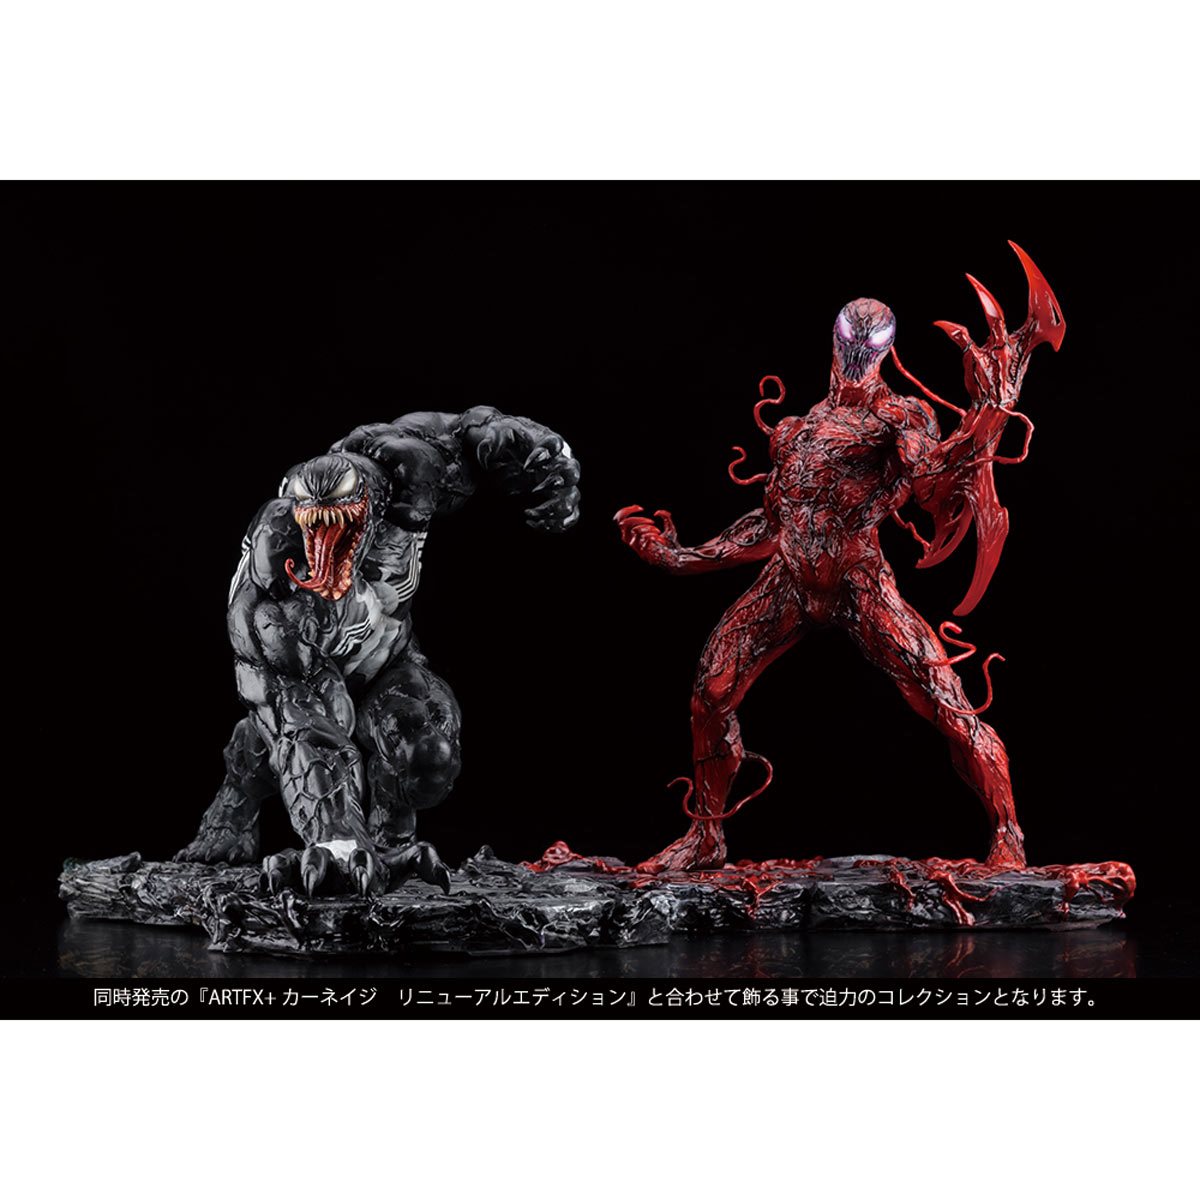 Venom 1/10 PVC Action Figure Marvel Universe Toy Figurines New KOTOBUKIYA ARTFX 